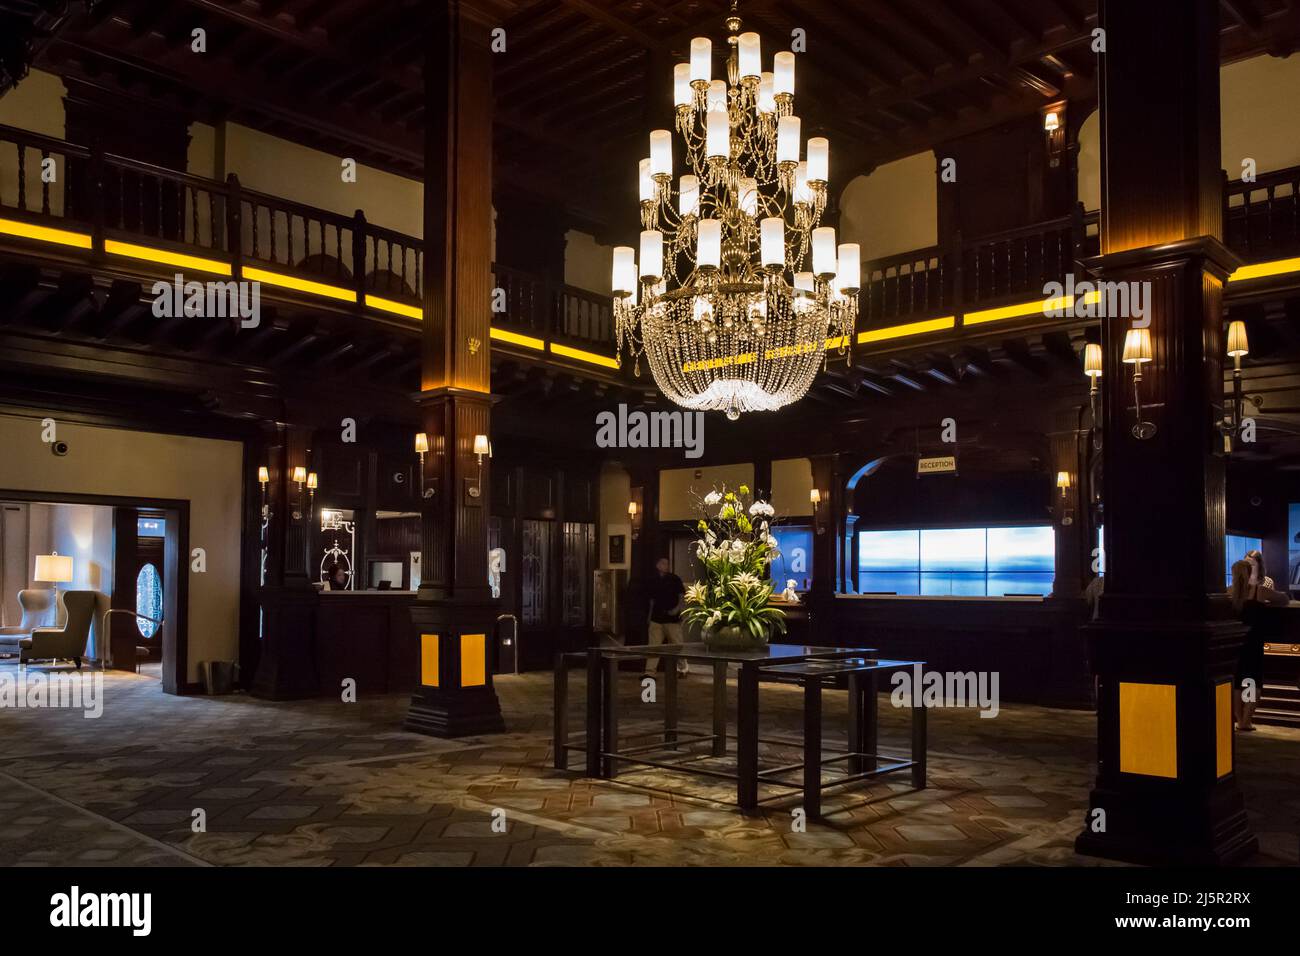 La lussuosa lobby dell'Hotel del Coronado, dove sono stati girati film come "alcuni come il caldo", Coronado Island, San Diego Foto Stock